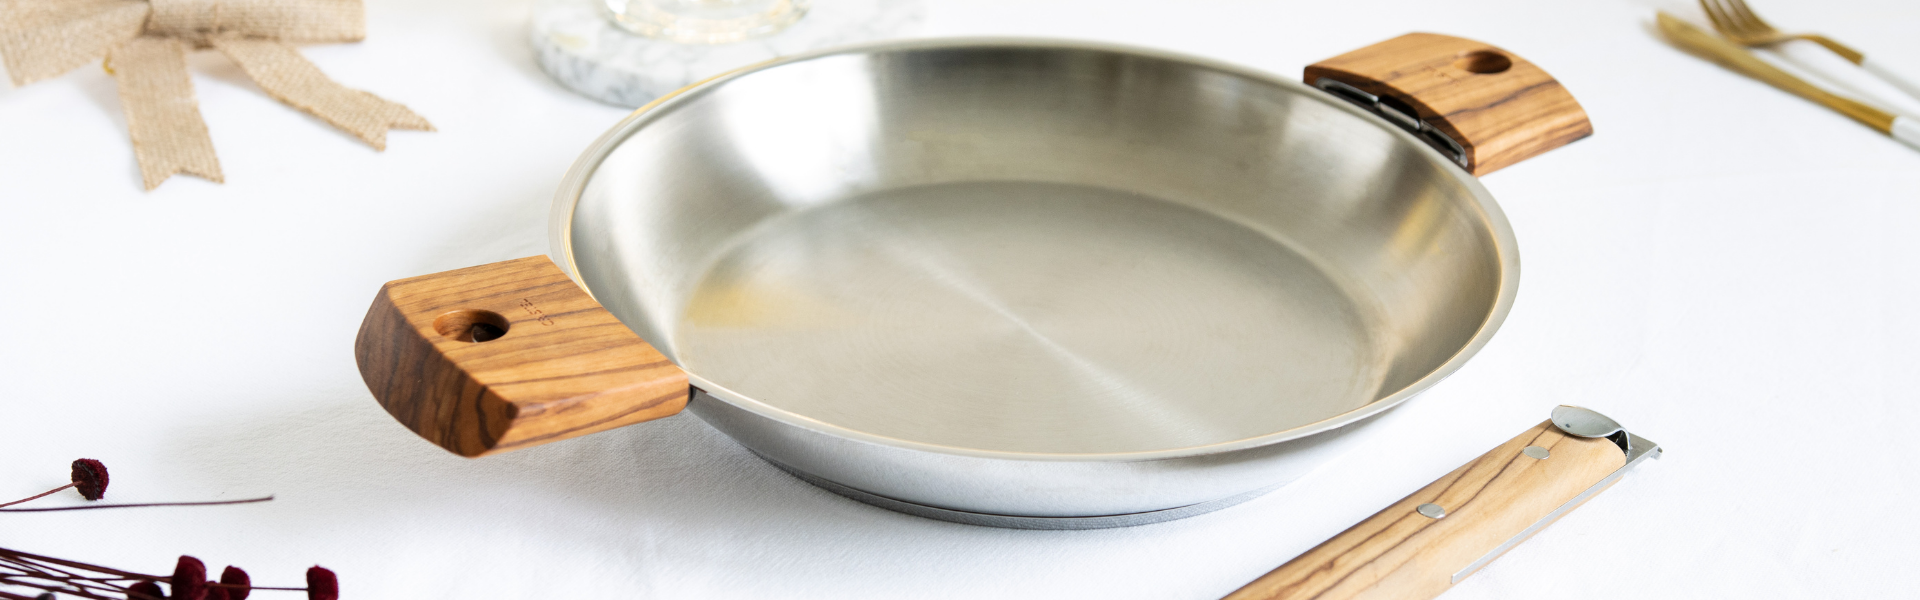 Quels sont les avantages d'une poêle en céramique ? - Le blog culinaire